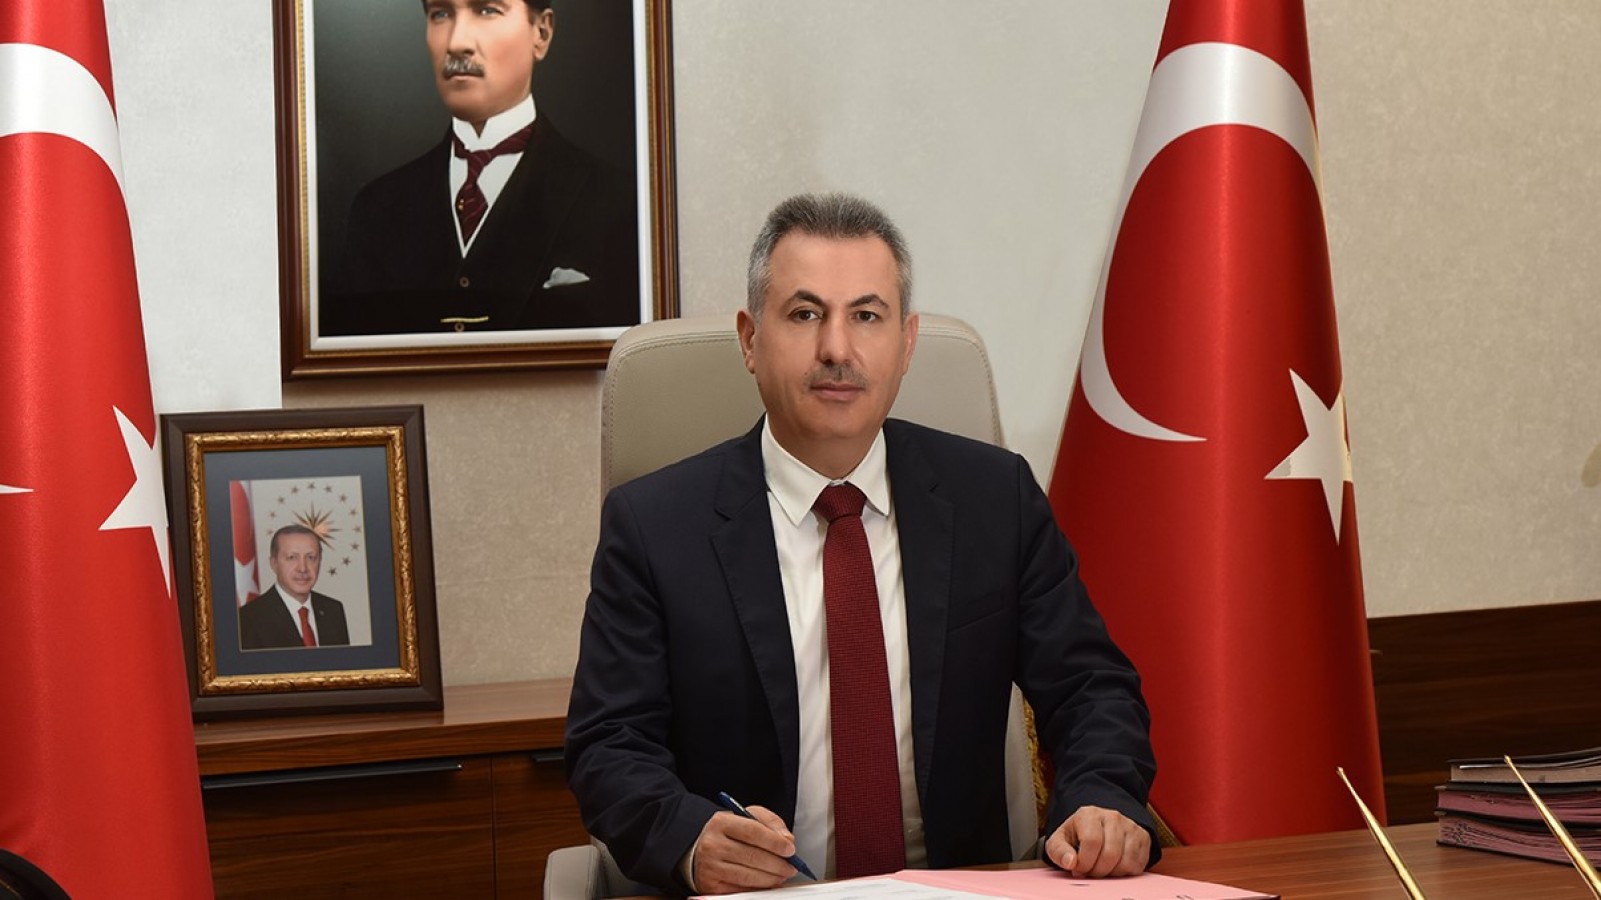 Dr. Süleyman Elban